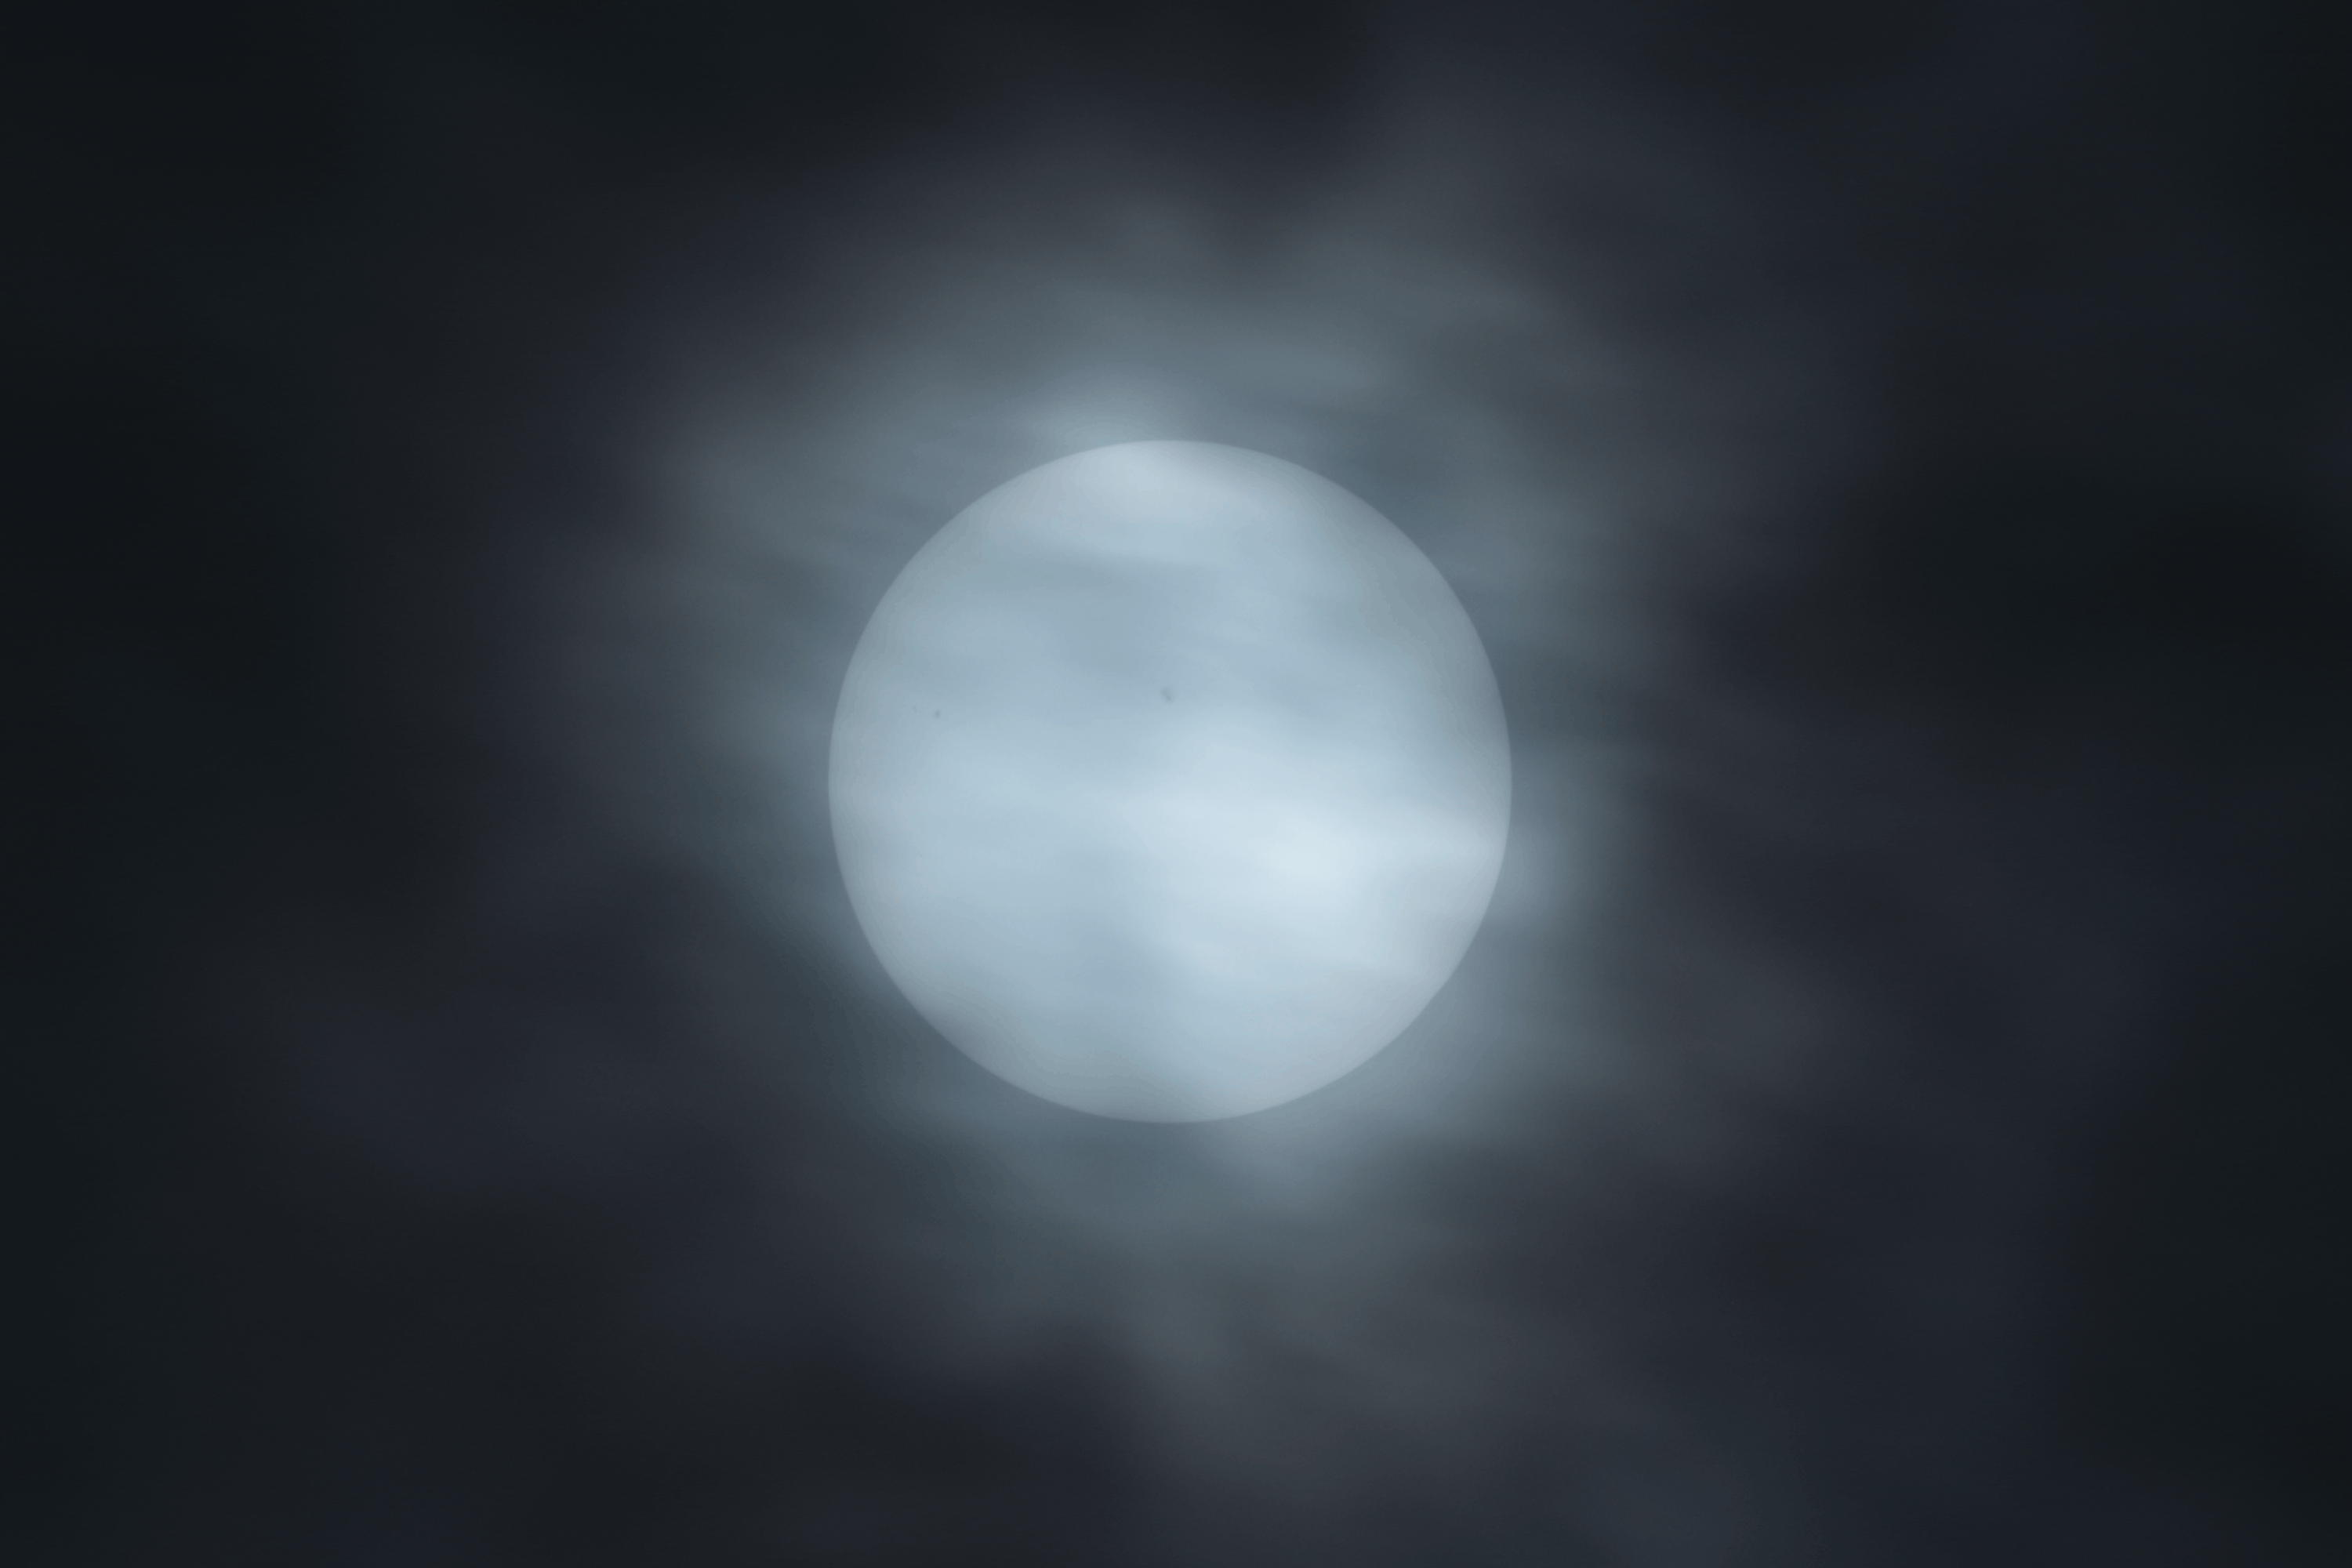 Animated GIF von der Sonnenfinsternis am 8. April 2024